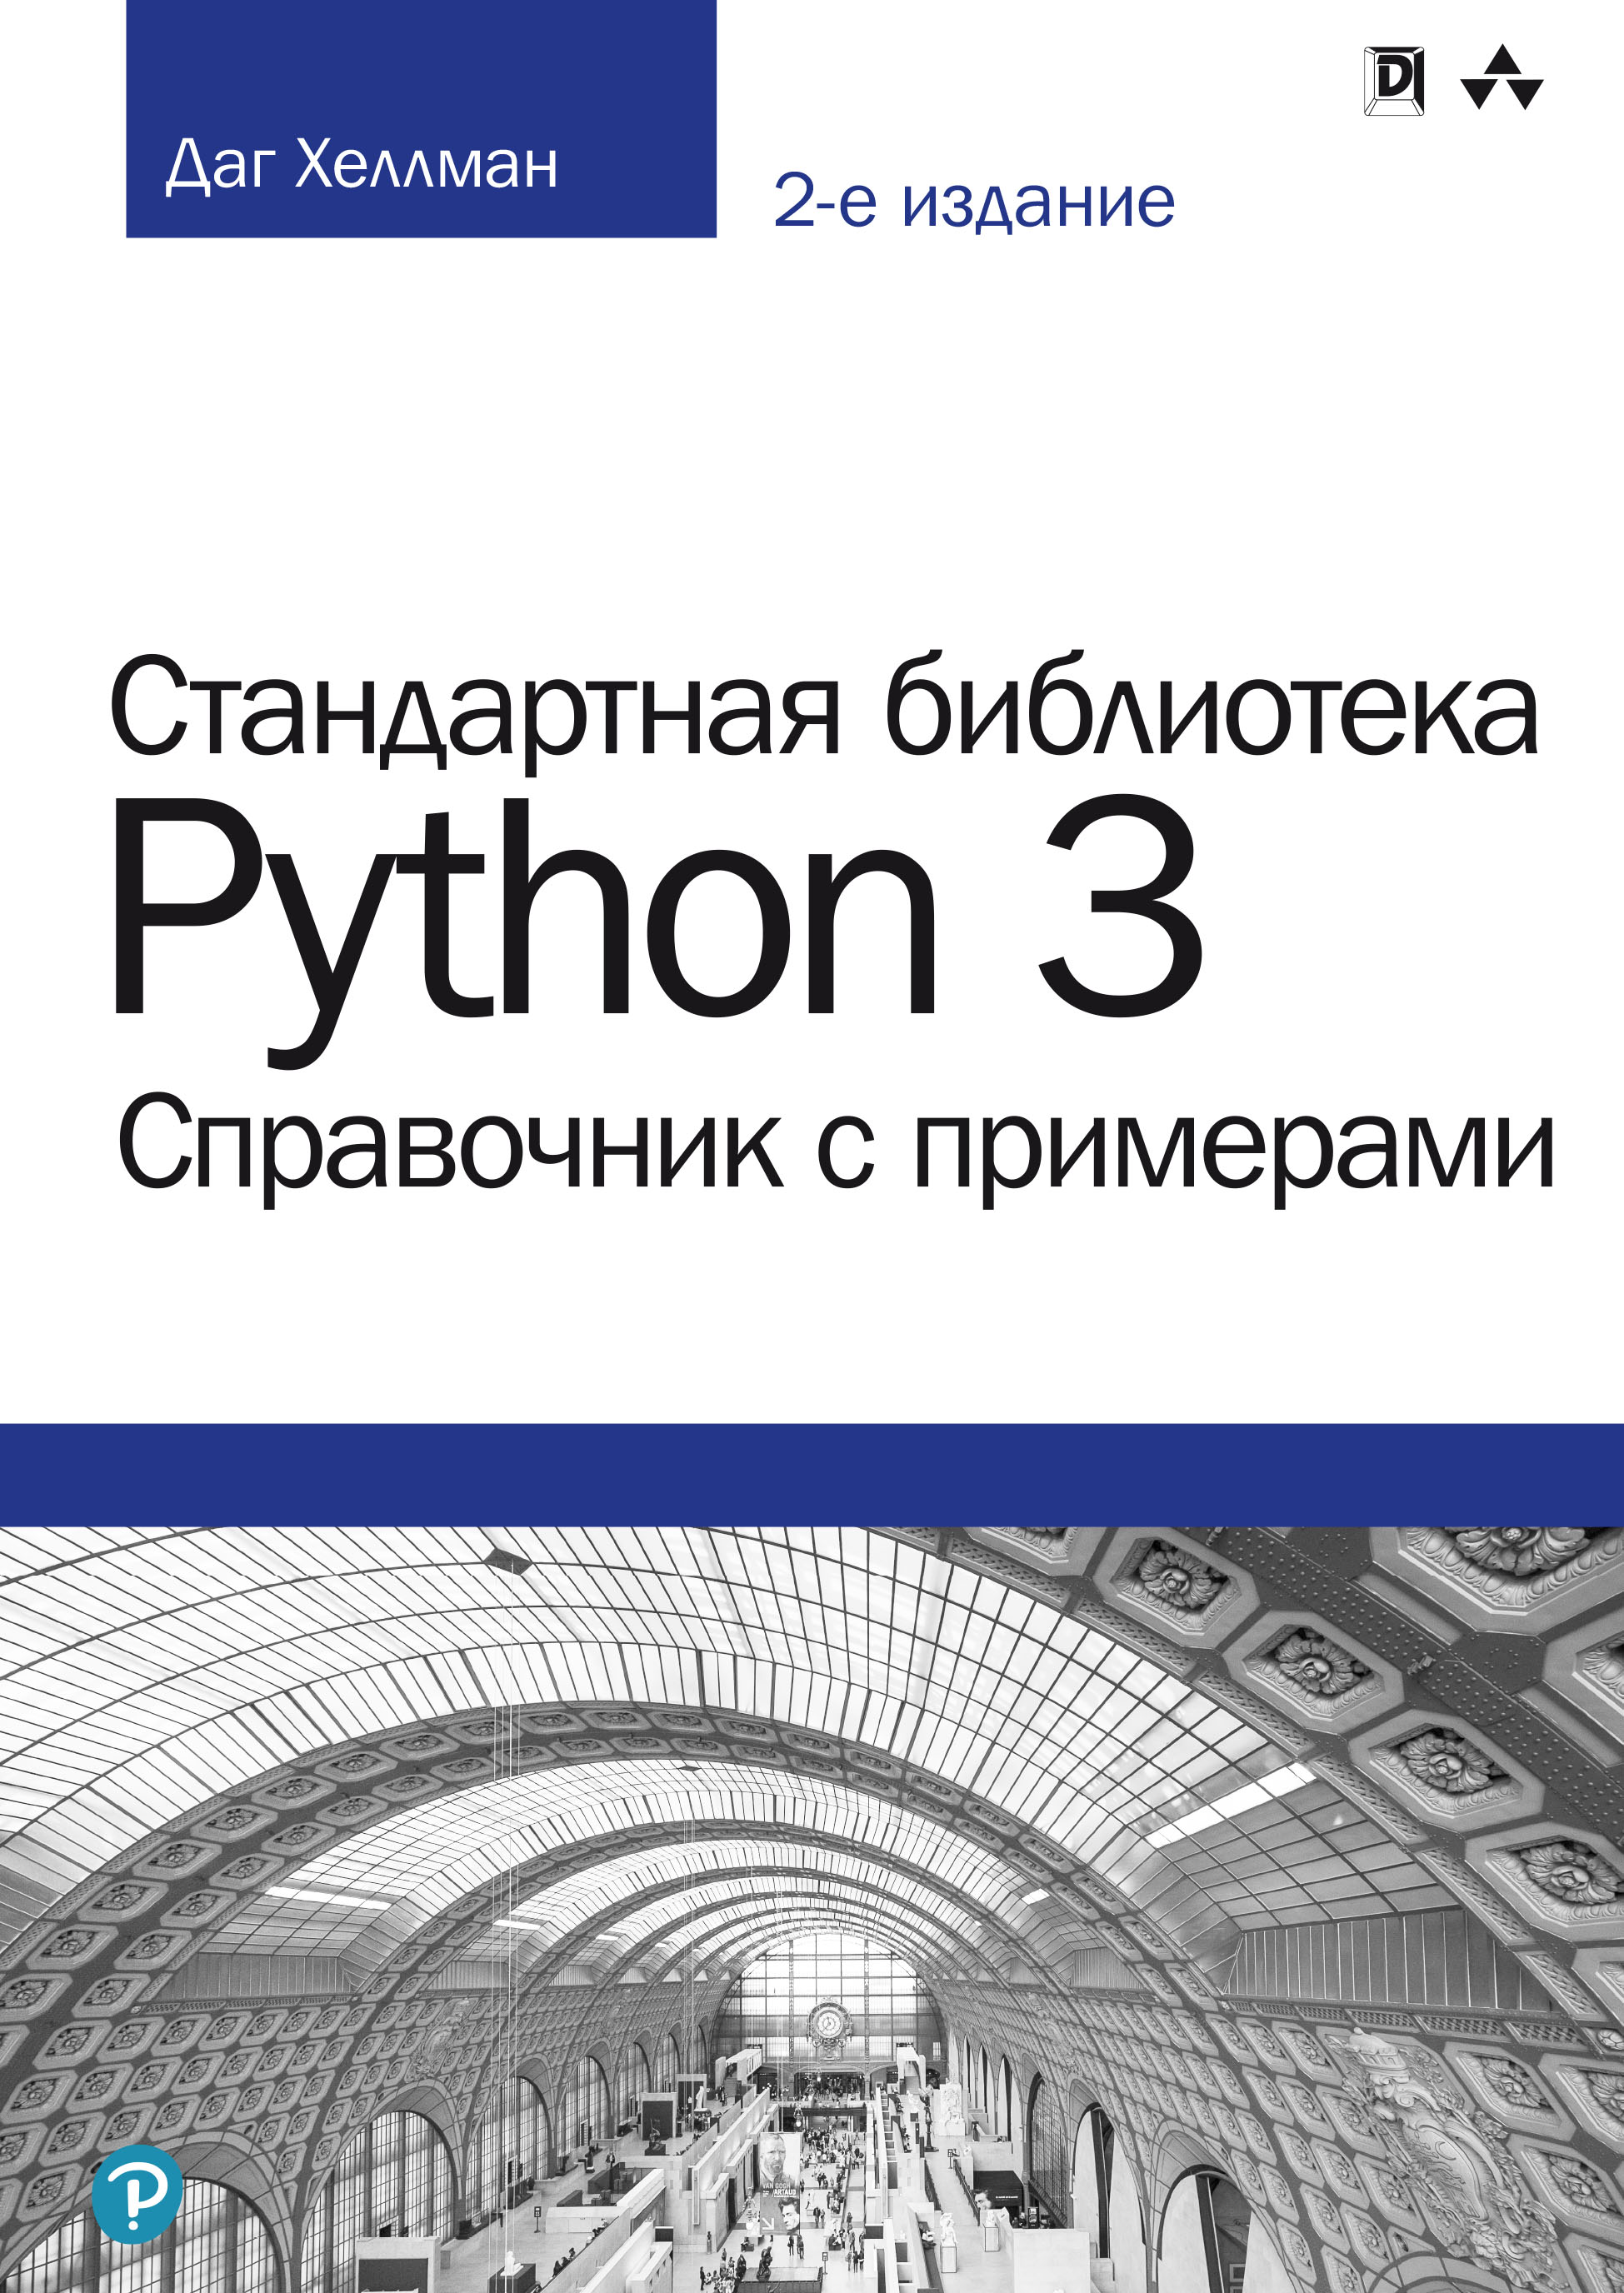 Книга  Стандартная библиотека Python 3: справочник с примерами созданная Даг Хеллман может относится к жанру зарубежная компьютерная литература, программирование. Стоимость электронной книги Стандартная библиотека Python 3: справочник с примерами с идентификатором 48637427 составляет 4500.00 руб.